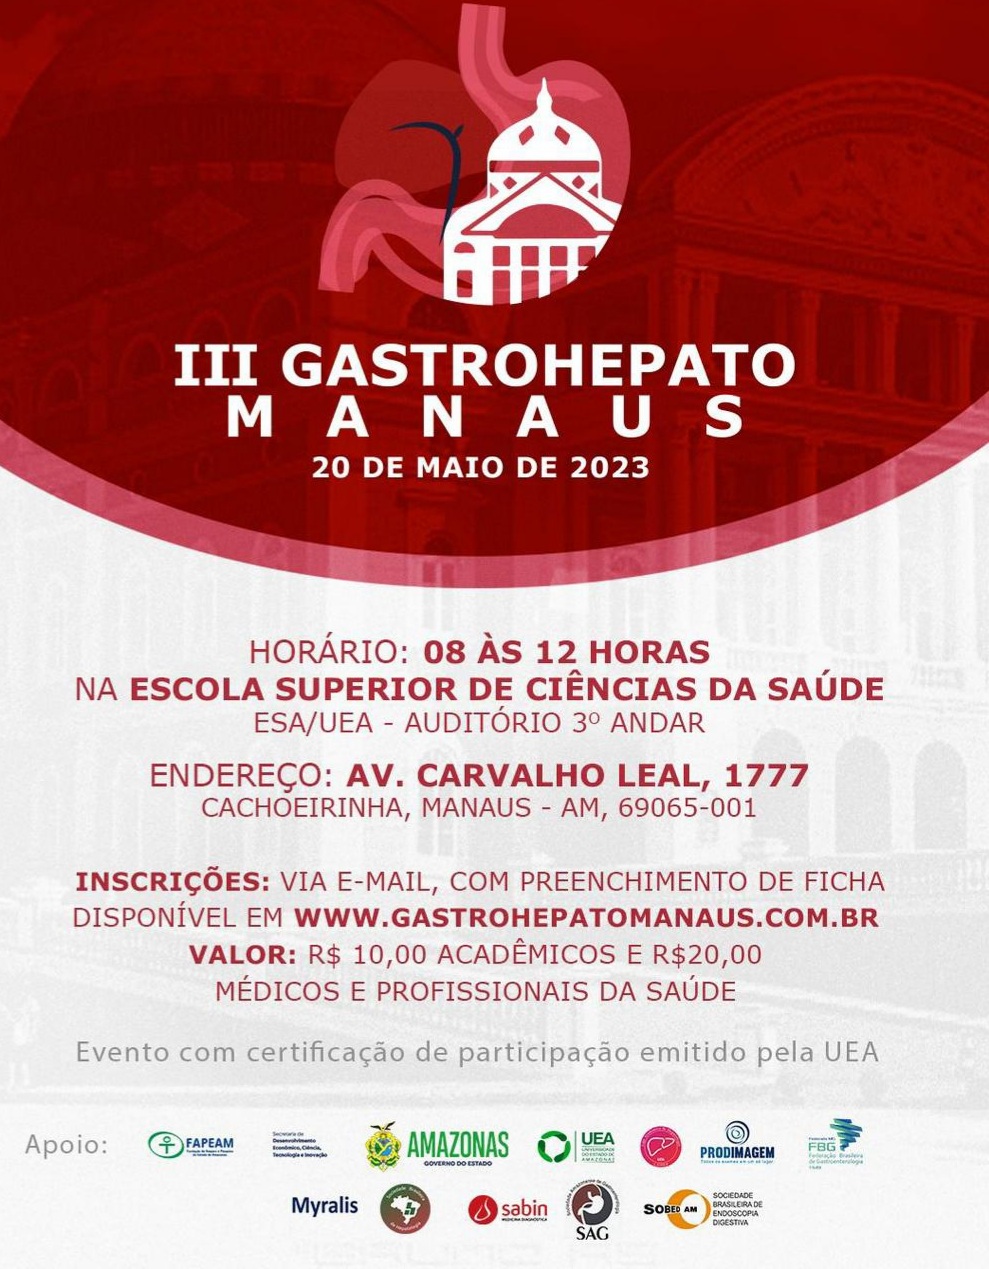 Organizado pela UEA, III GastroHepato reunirá especialistas da área de Manaus e do país